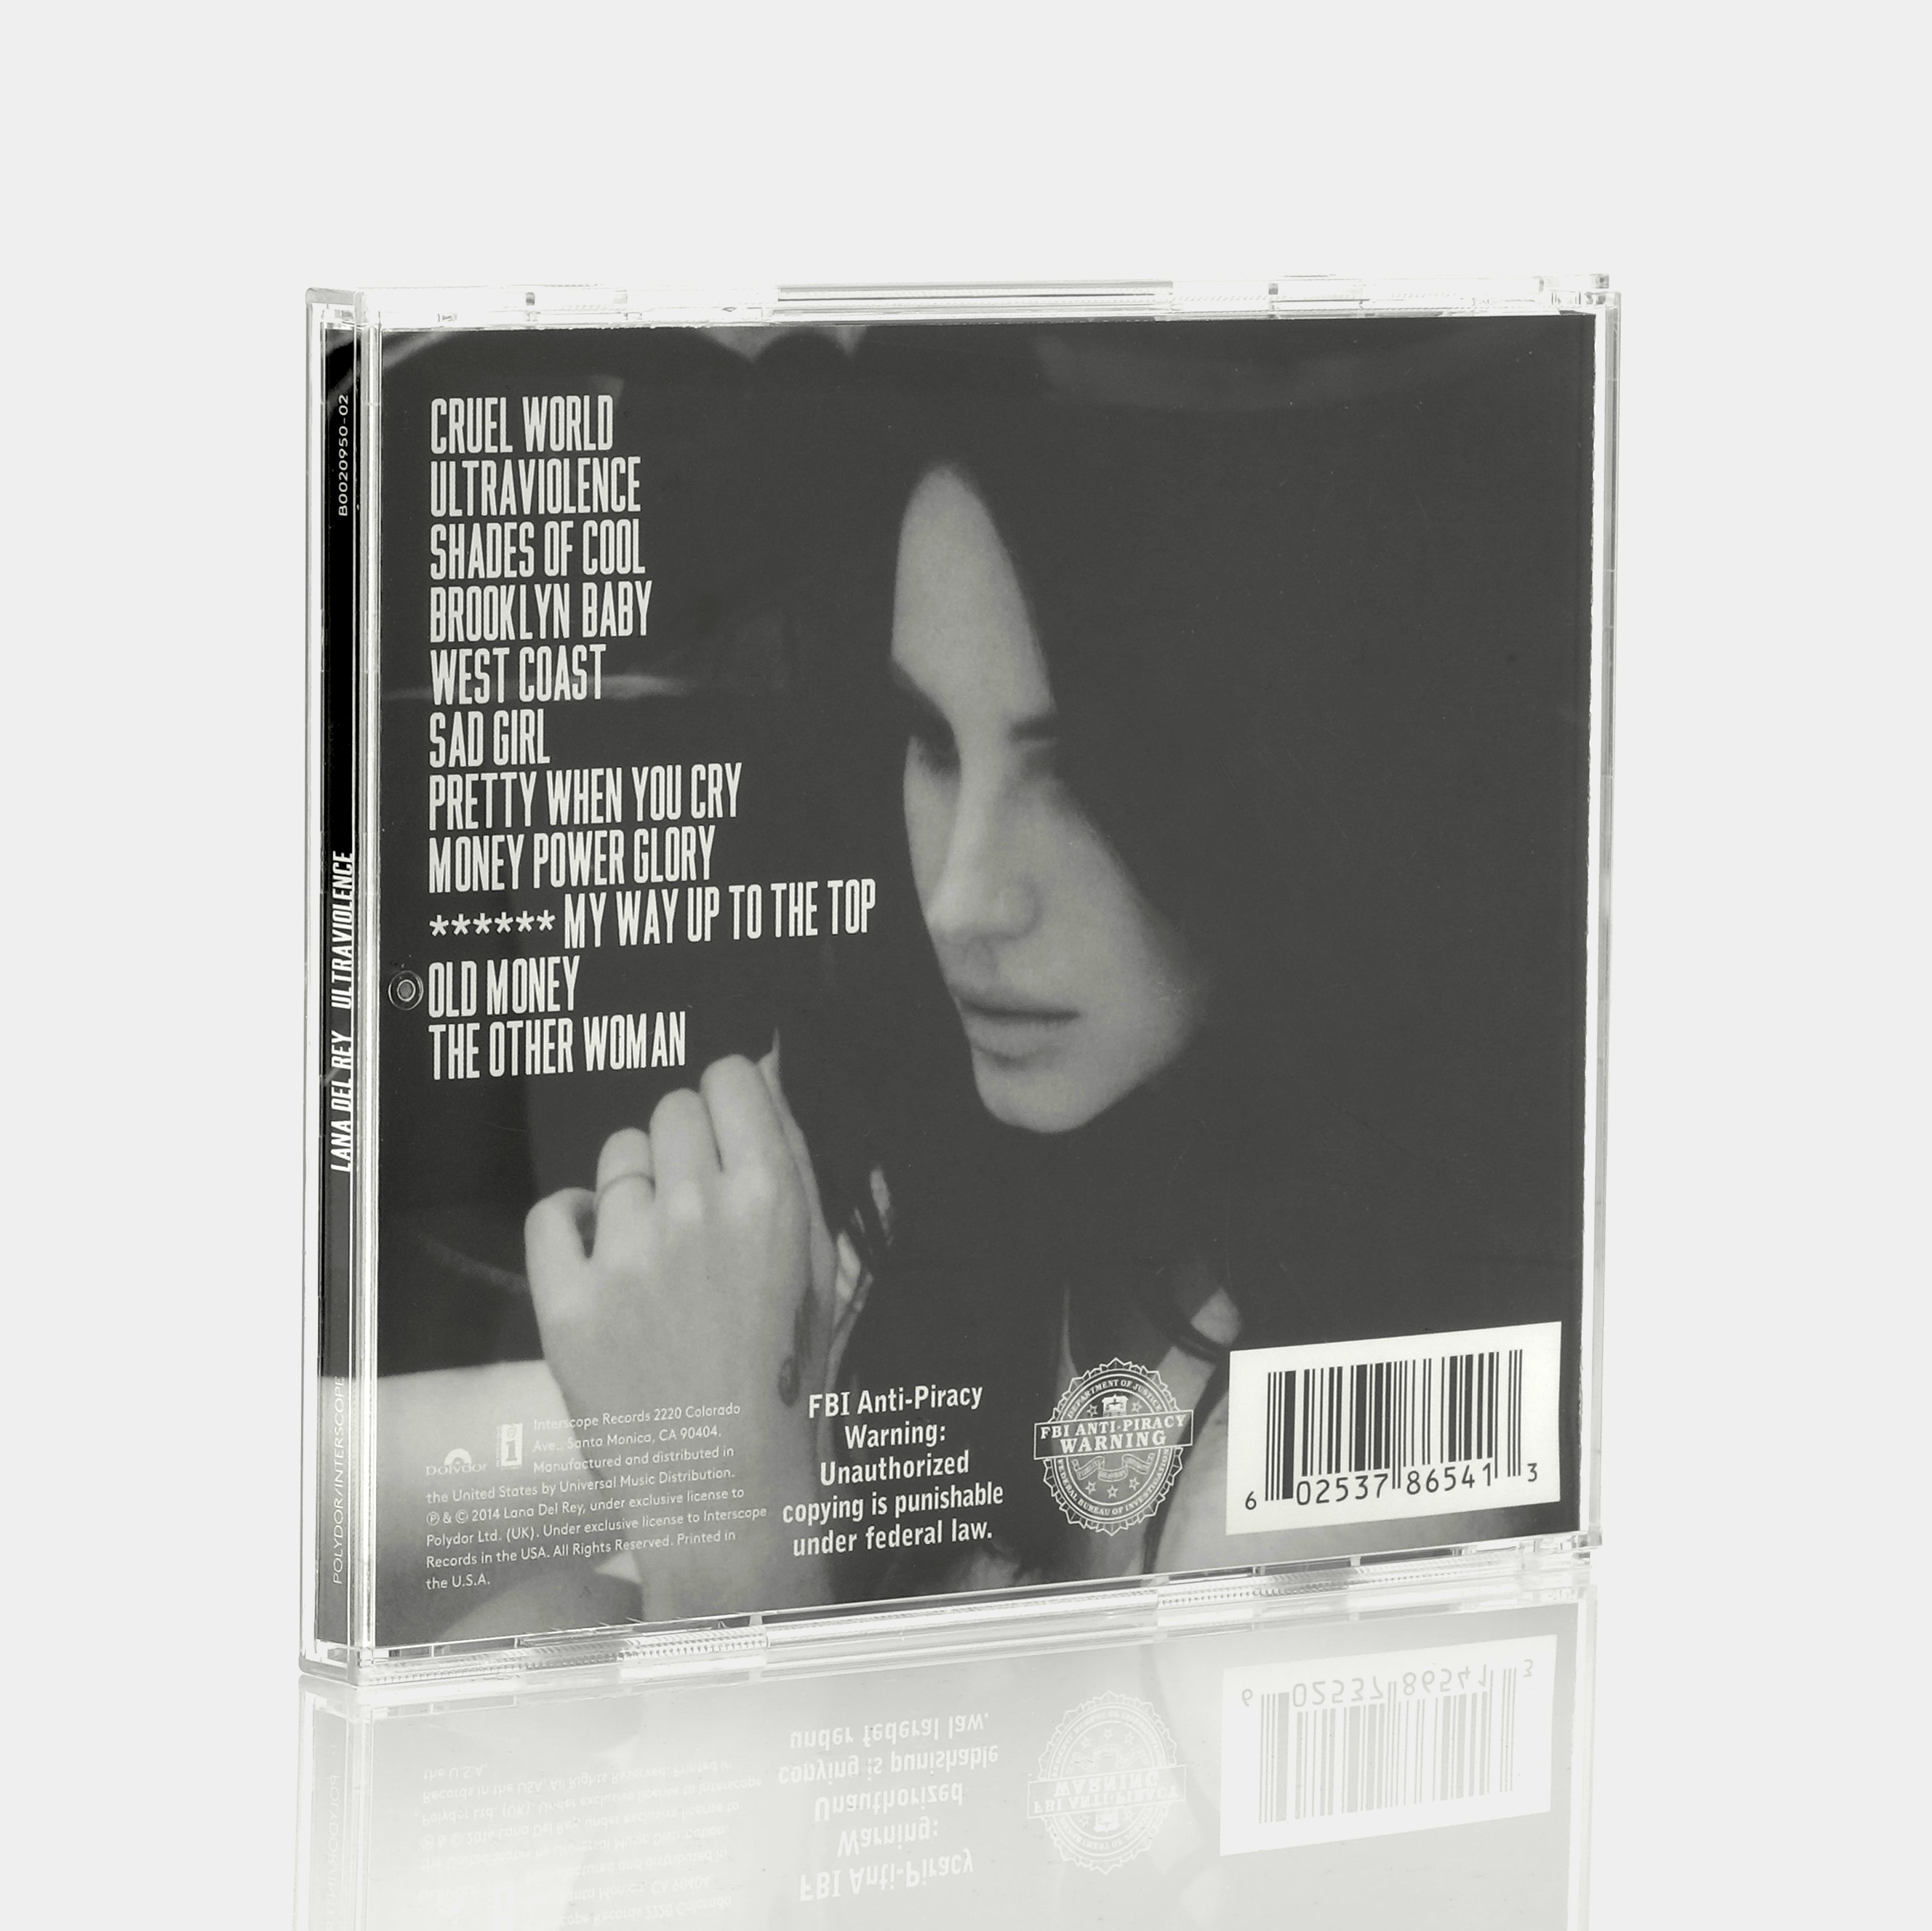  Lana Del Rey: Ultraviolence Vinyl 2LP: CDs y Vinilo